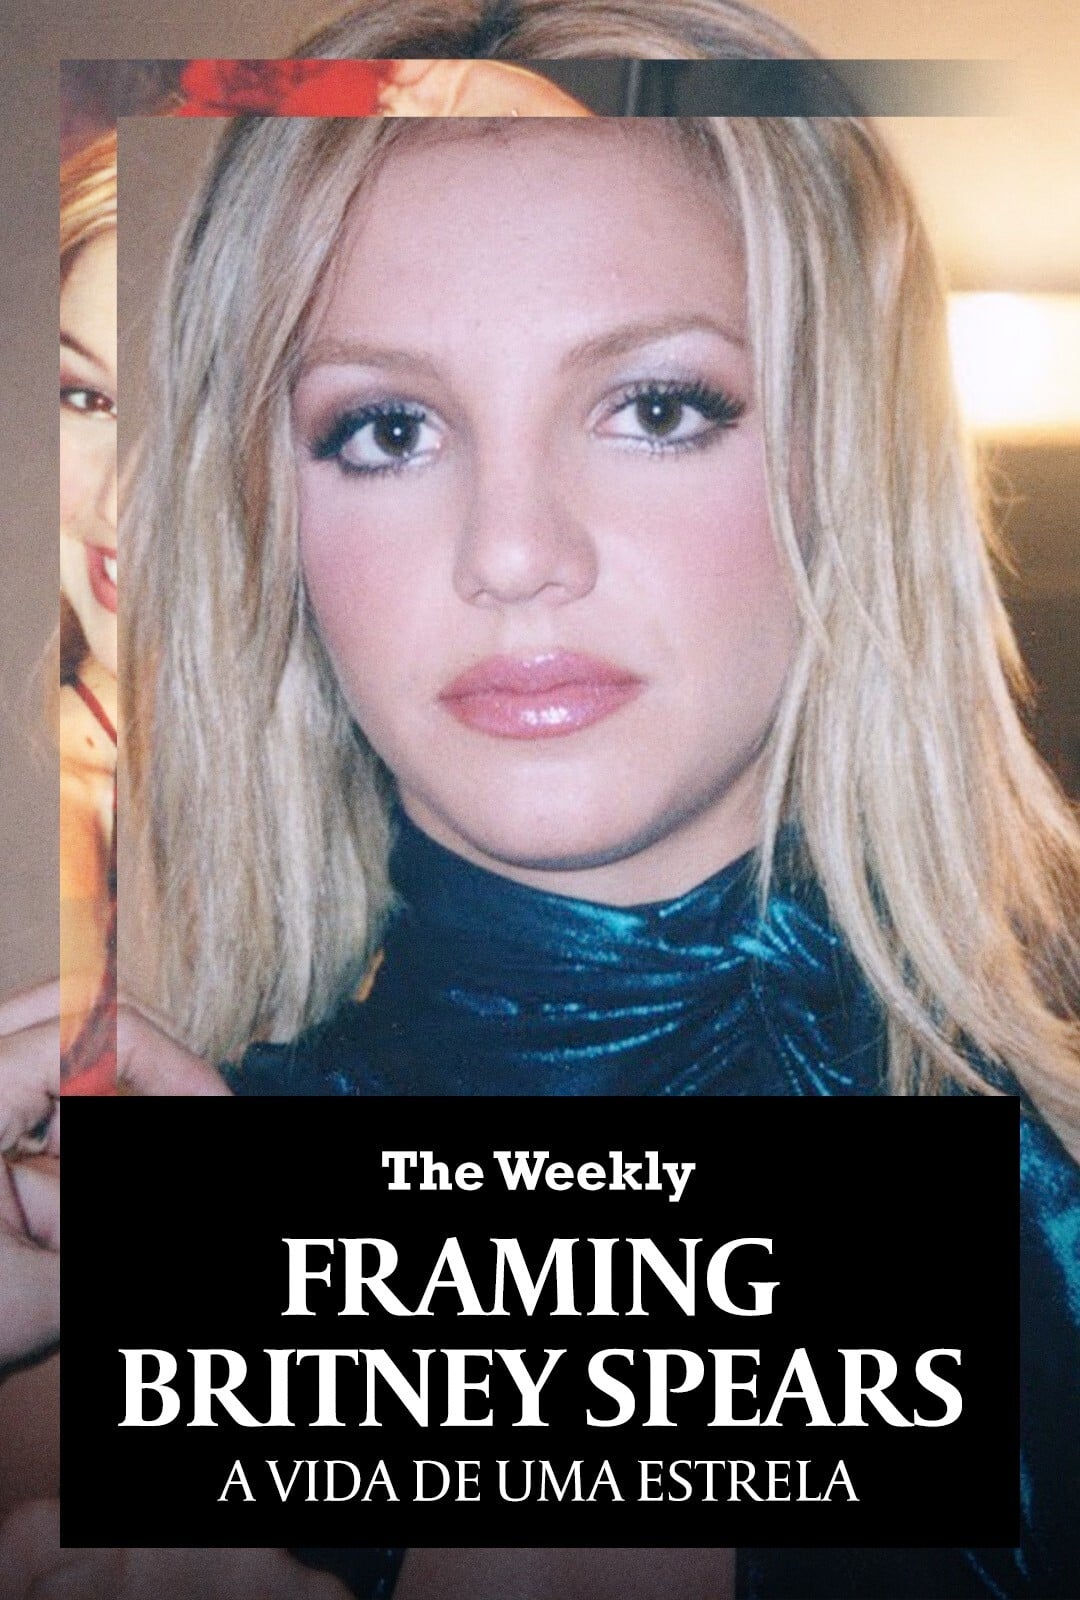 Crítica Documentário Framing Britney Spears: A Vida de uma Estrela GloboPlay Pôster